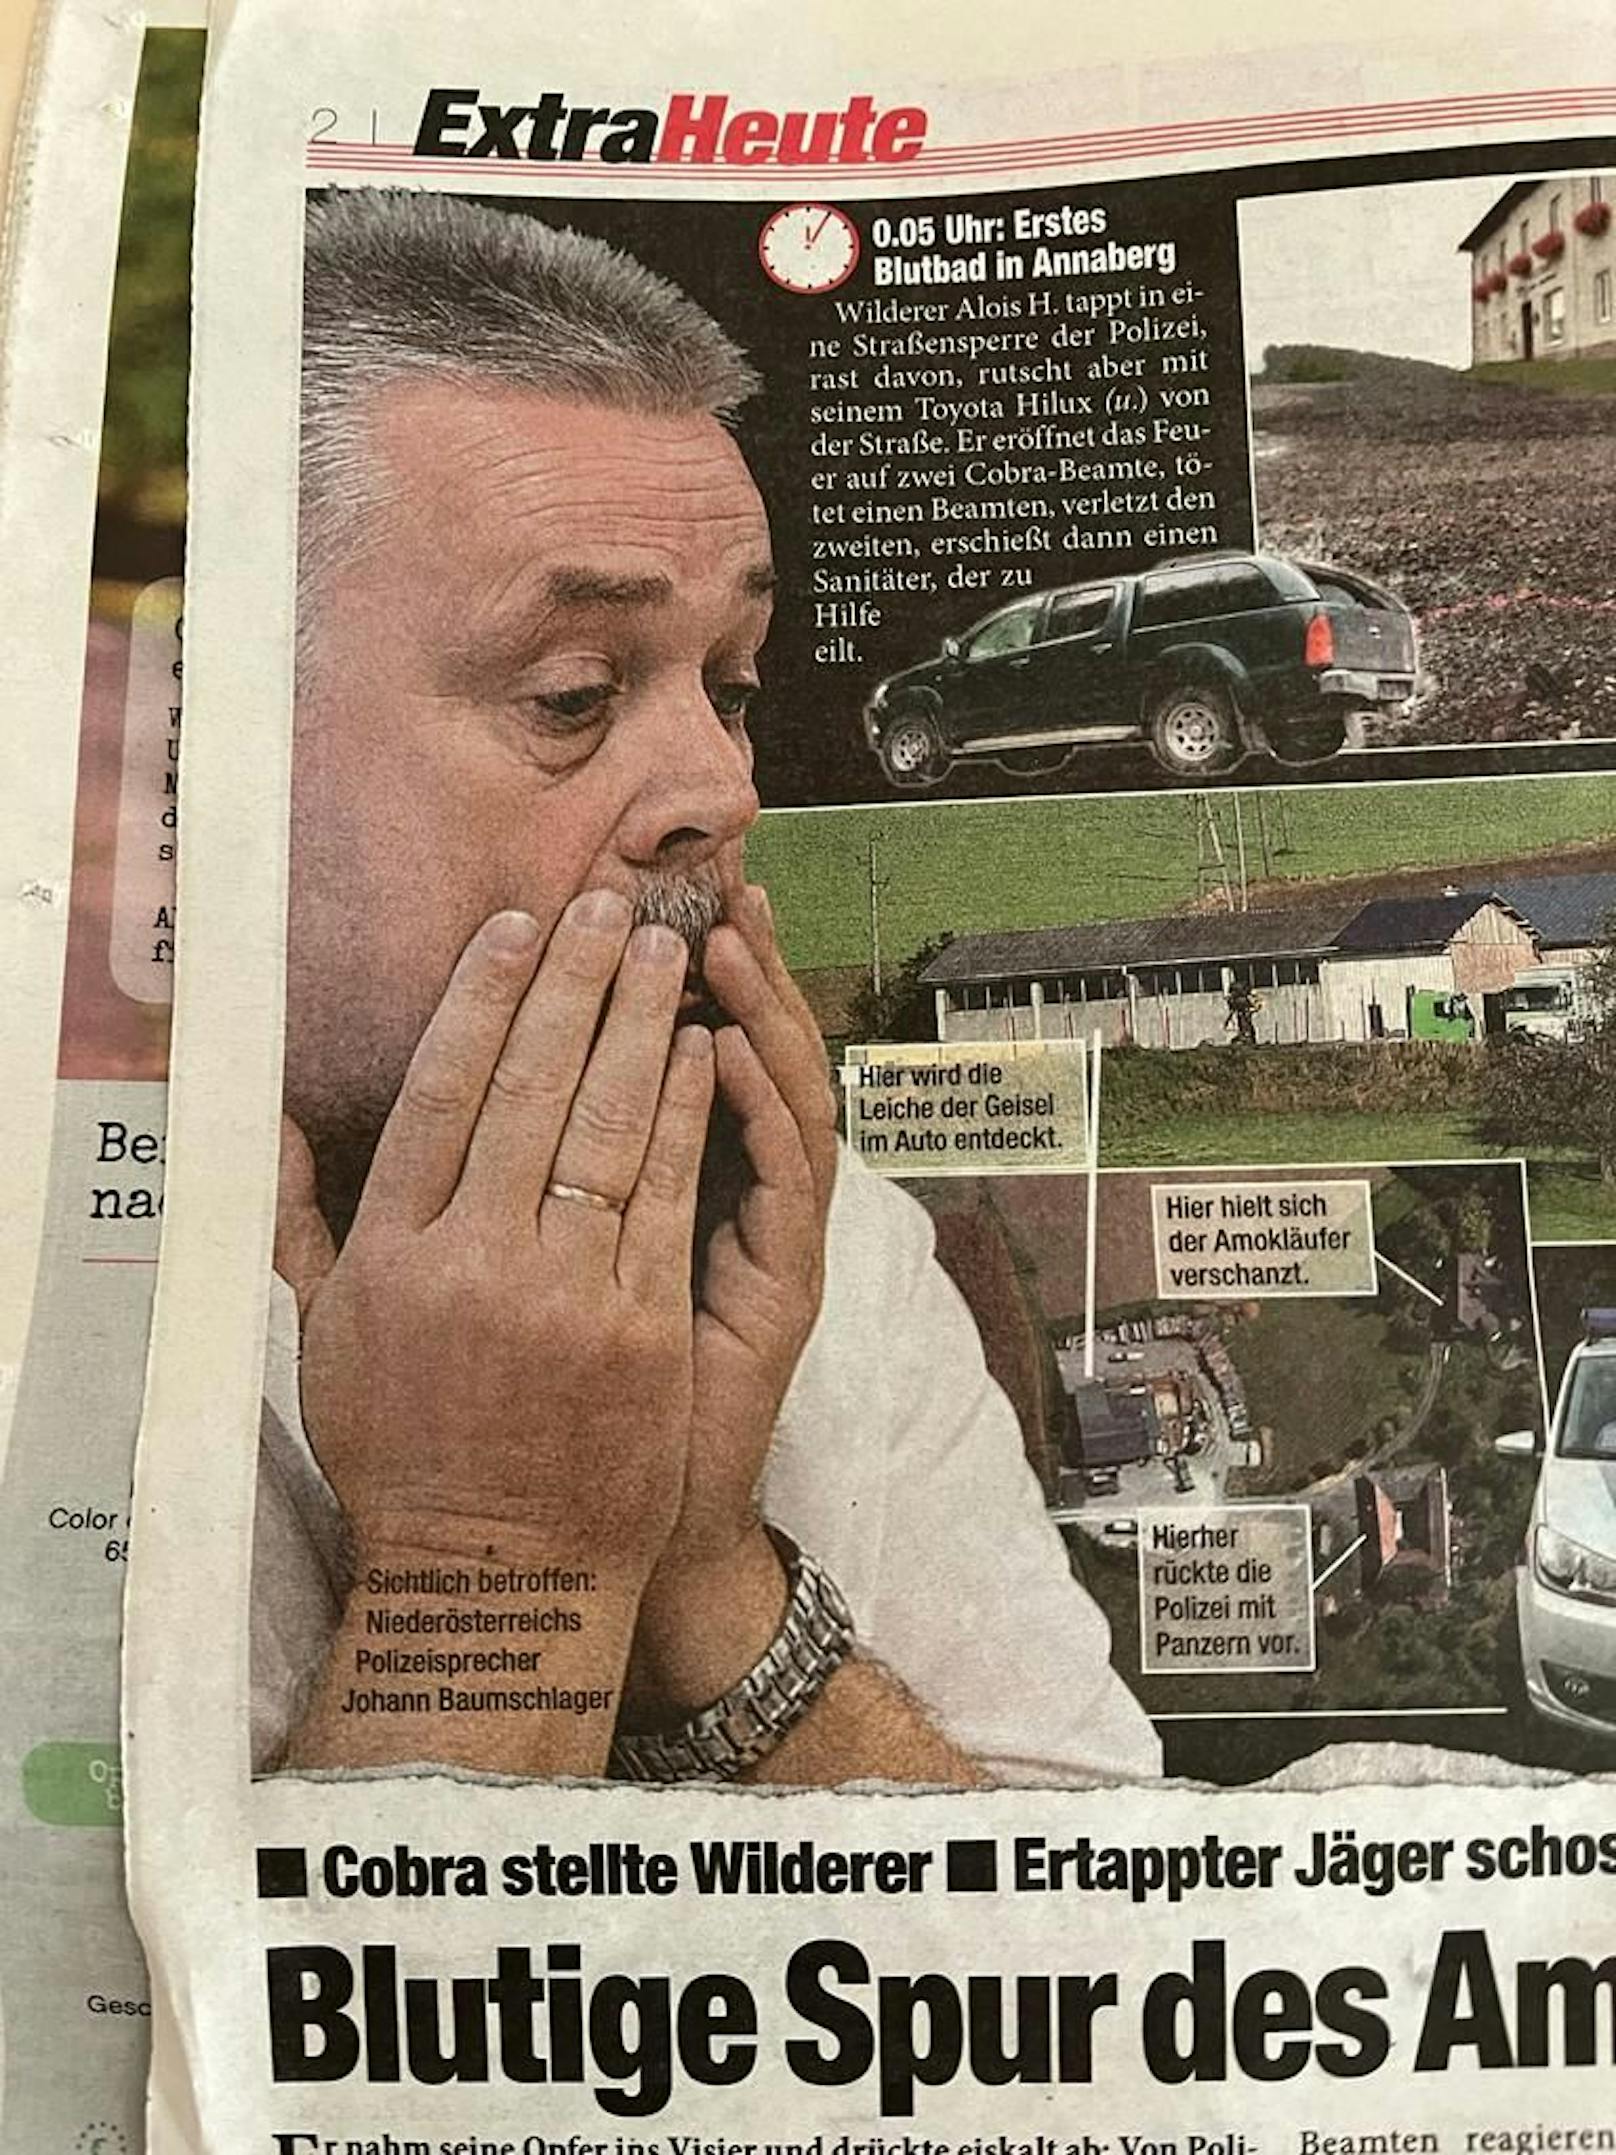 Schwer gezeichnet am 17.9. 2013: Pressesprecher Johann Bauschlager schlug die Hände vors Gesicht.